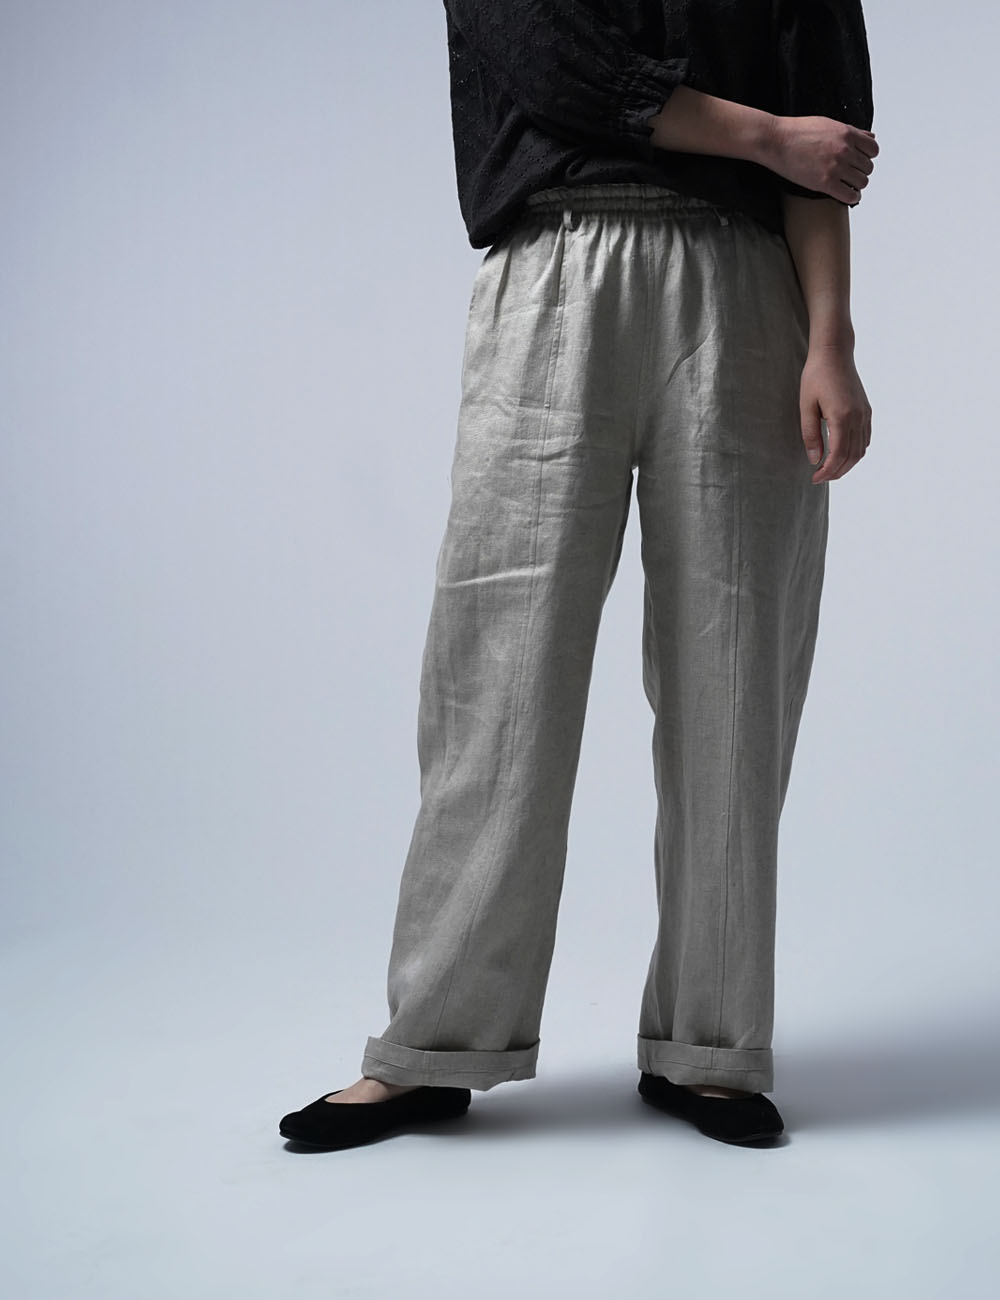 【プレミアム】 ゆったりしすぎない Linen pants リネン100% バギーパンツ / フラックス b011f-flx1